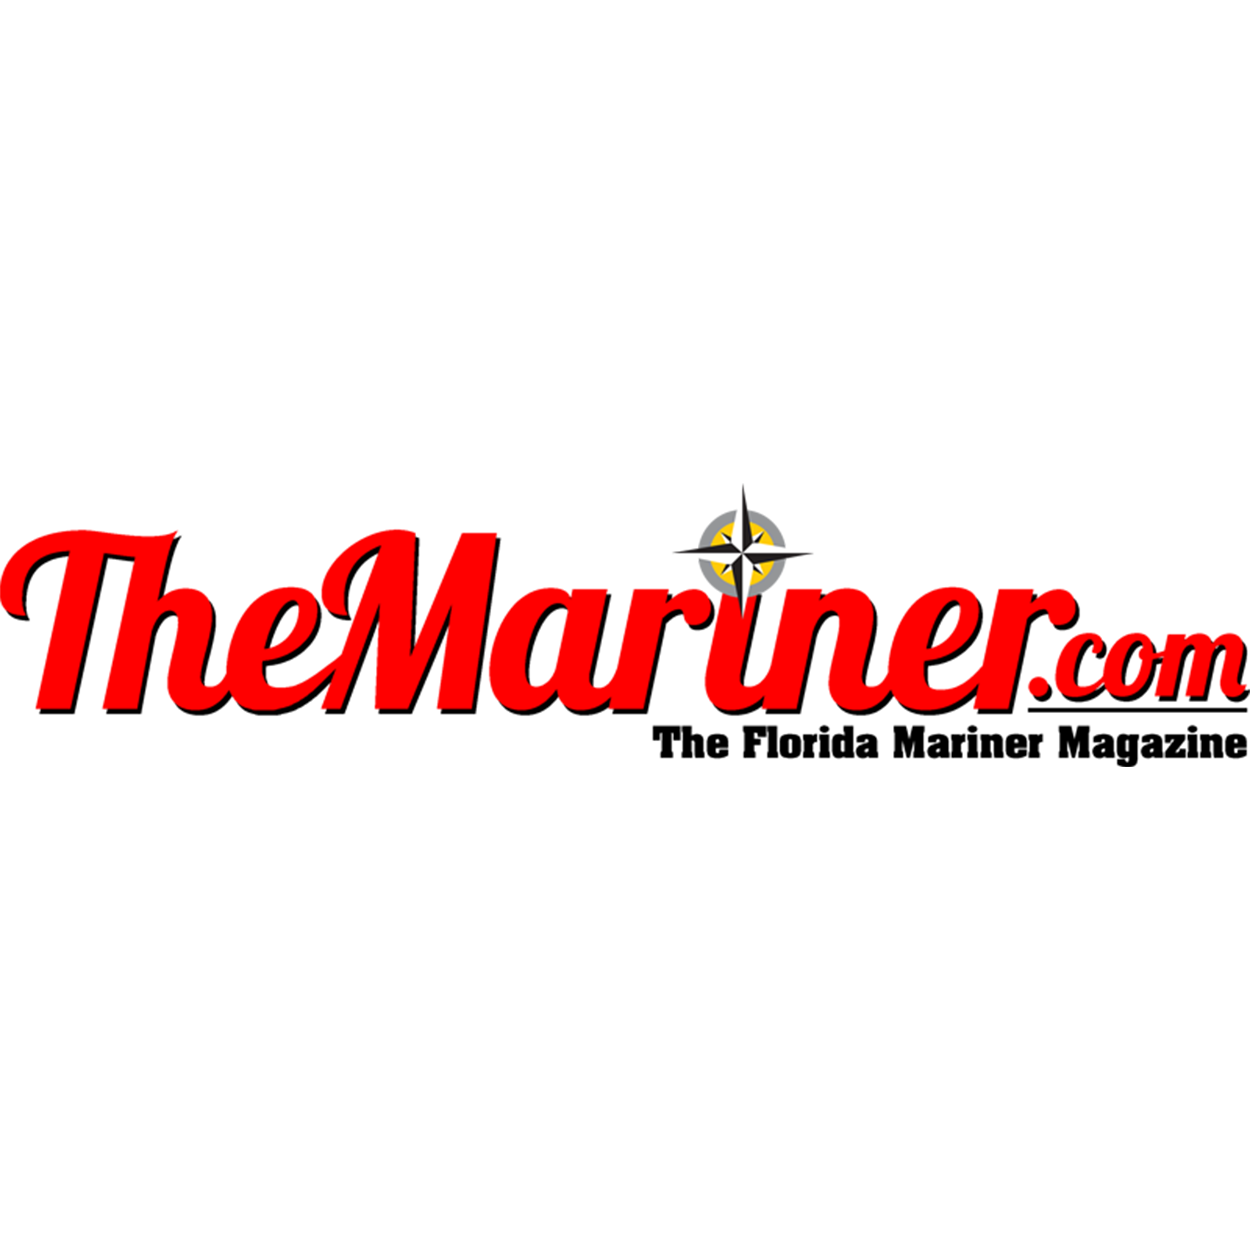 The Florida Mariner Magazine logo